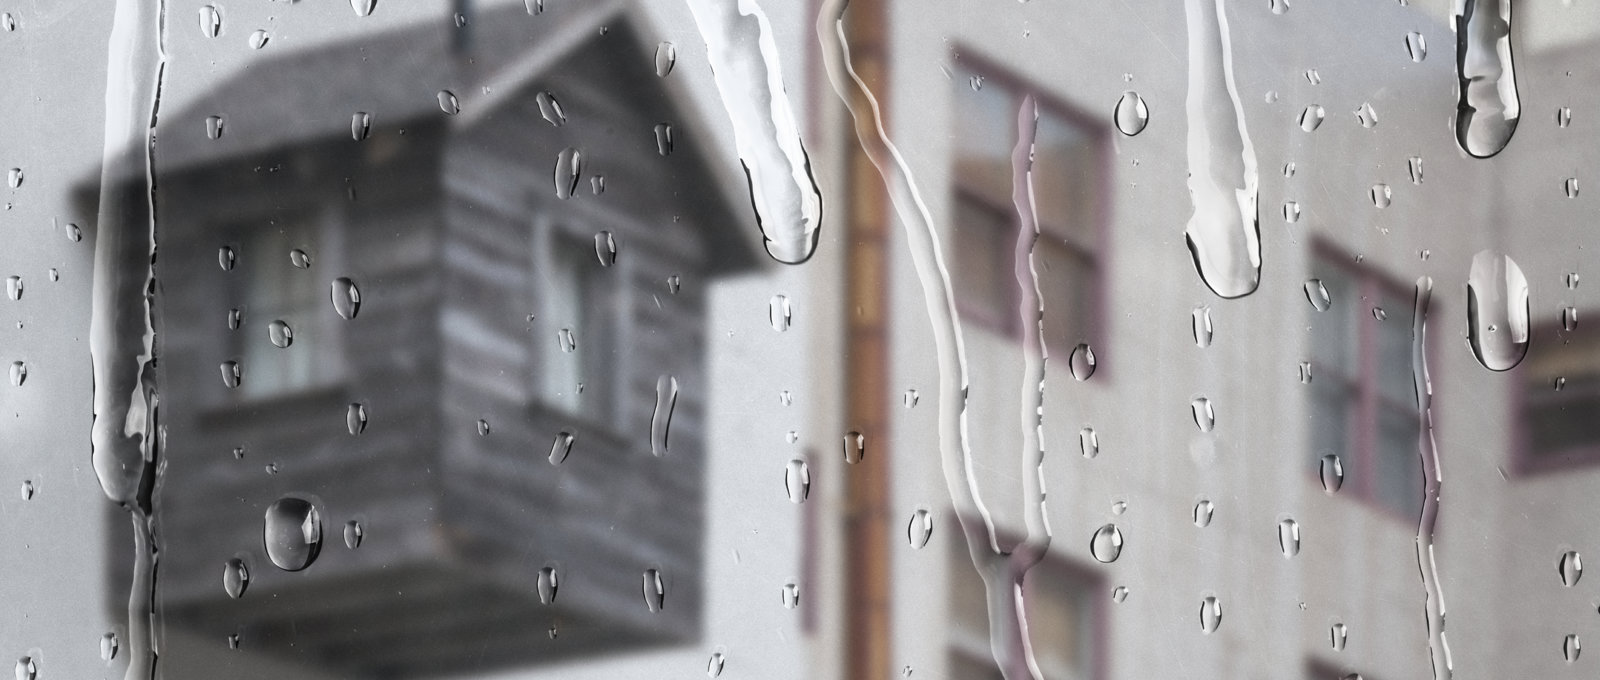 White Apartment Through Window With Rain Drops